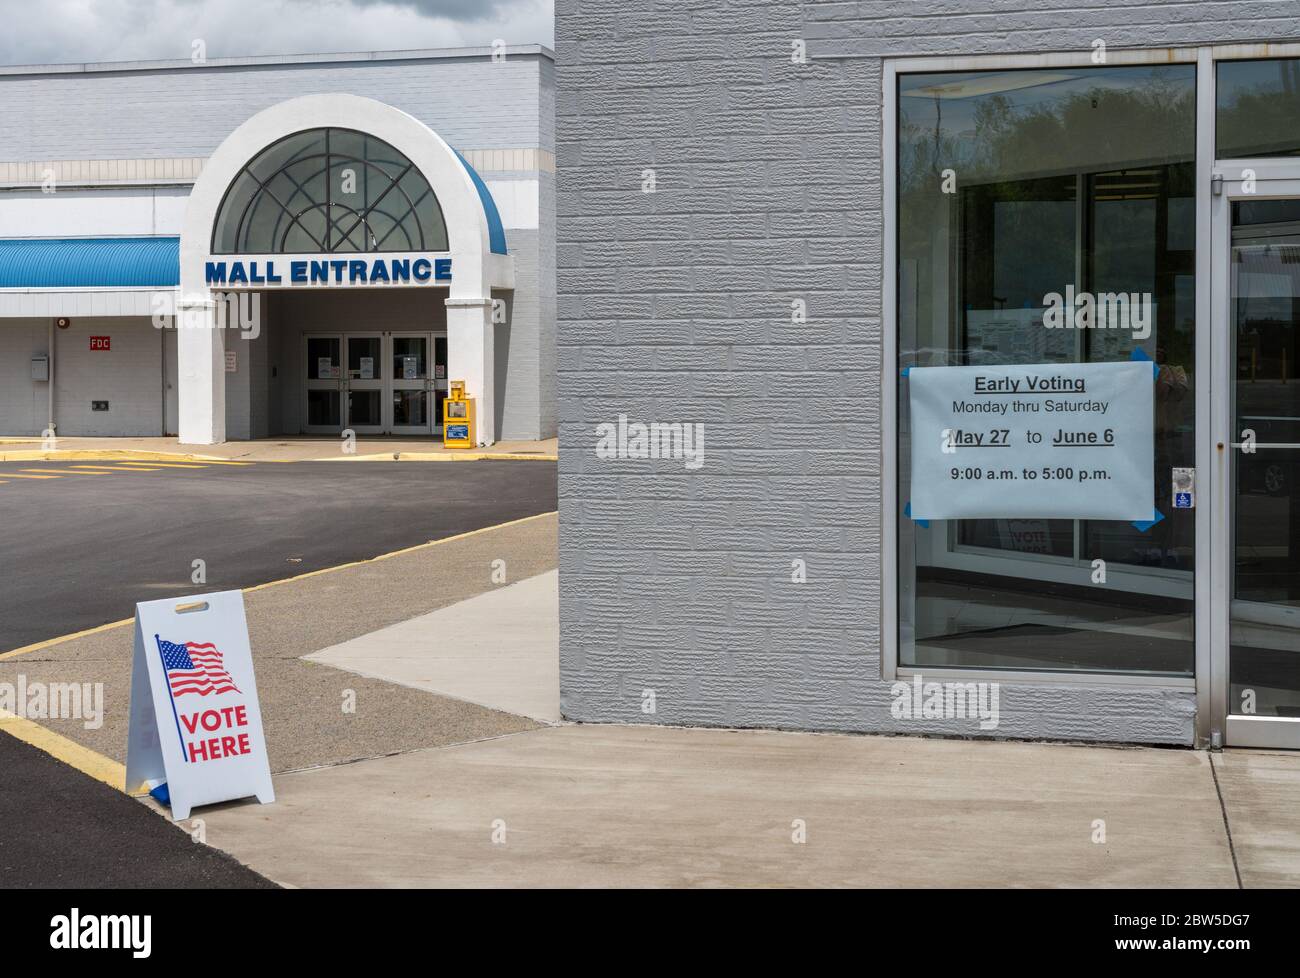 US-Flaggen klebten an Fenster des Polling Place für die vorzeitige Abstimmung in den USA Wahlen Stockfoto